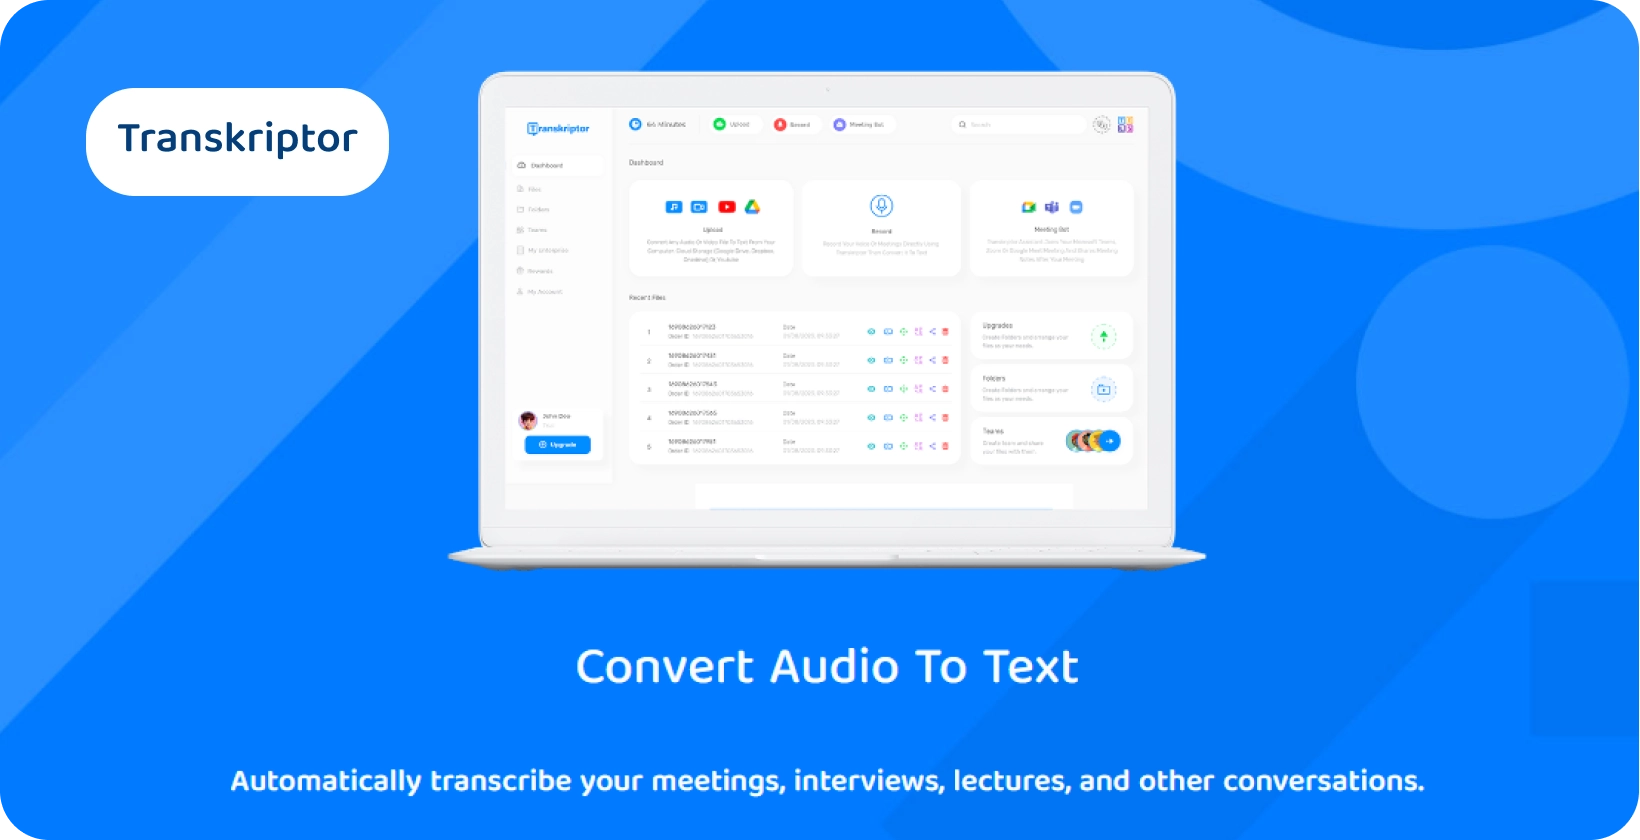 Dasbor Transkriptor menampilkan fitur konversi audio ke teks untuk transkripsi yang efisien.